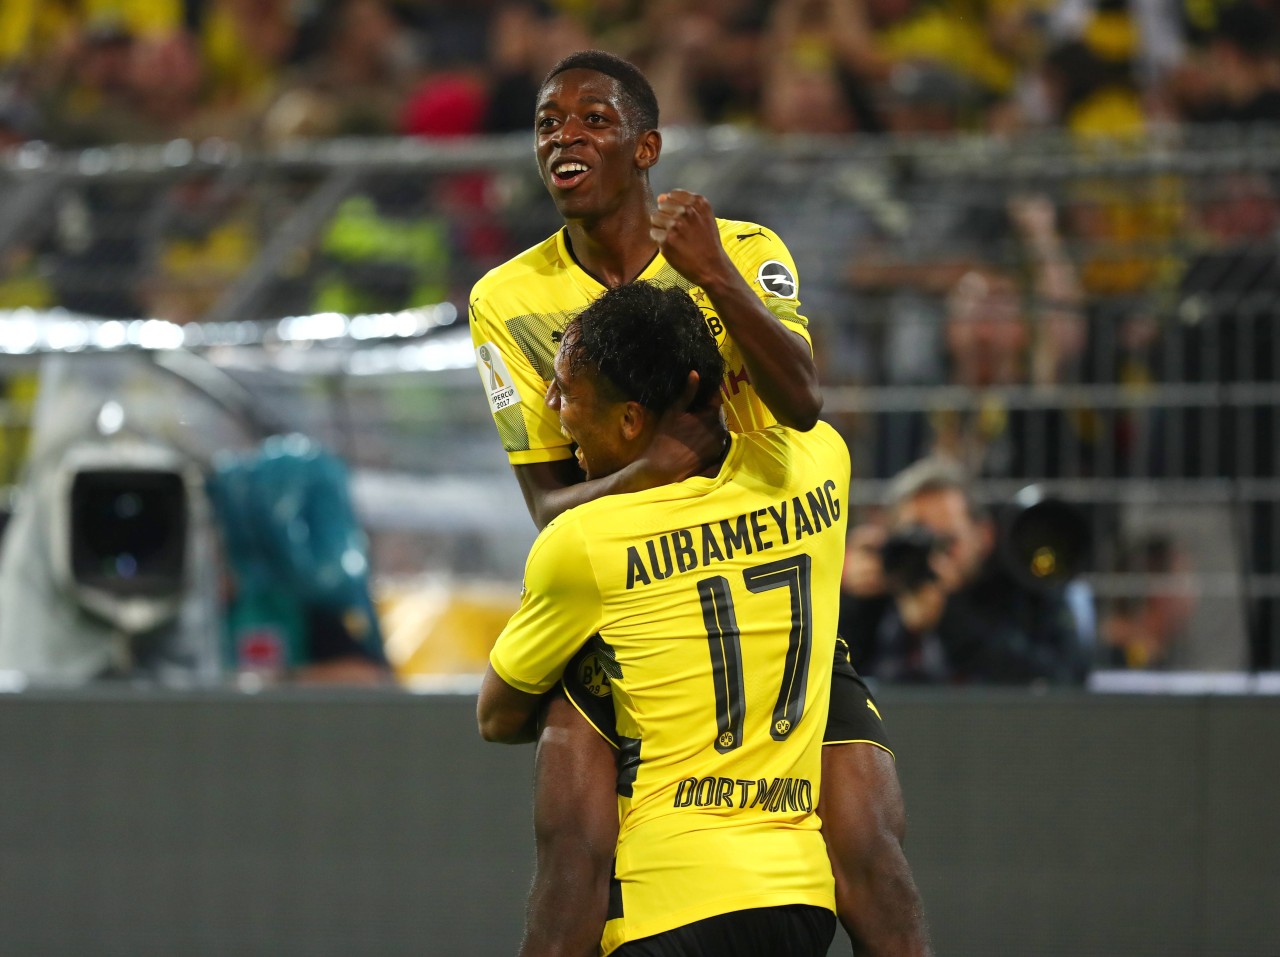 Ein Jahr lang begeisterten Dembélé und Aubameyang die BVB-Fans gemeinsam.